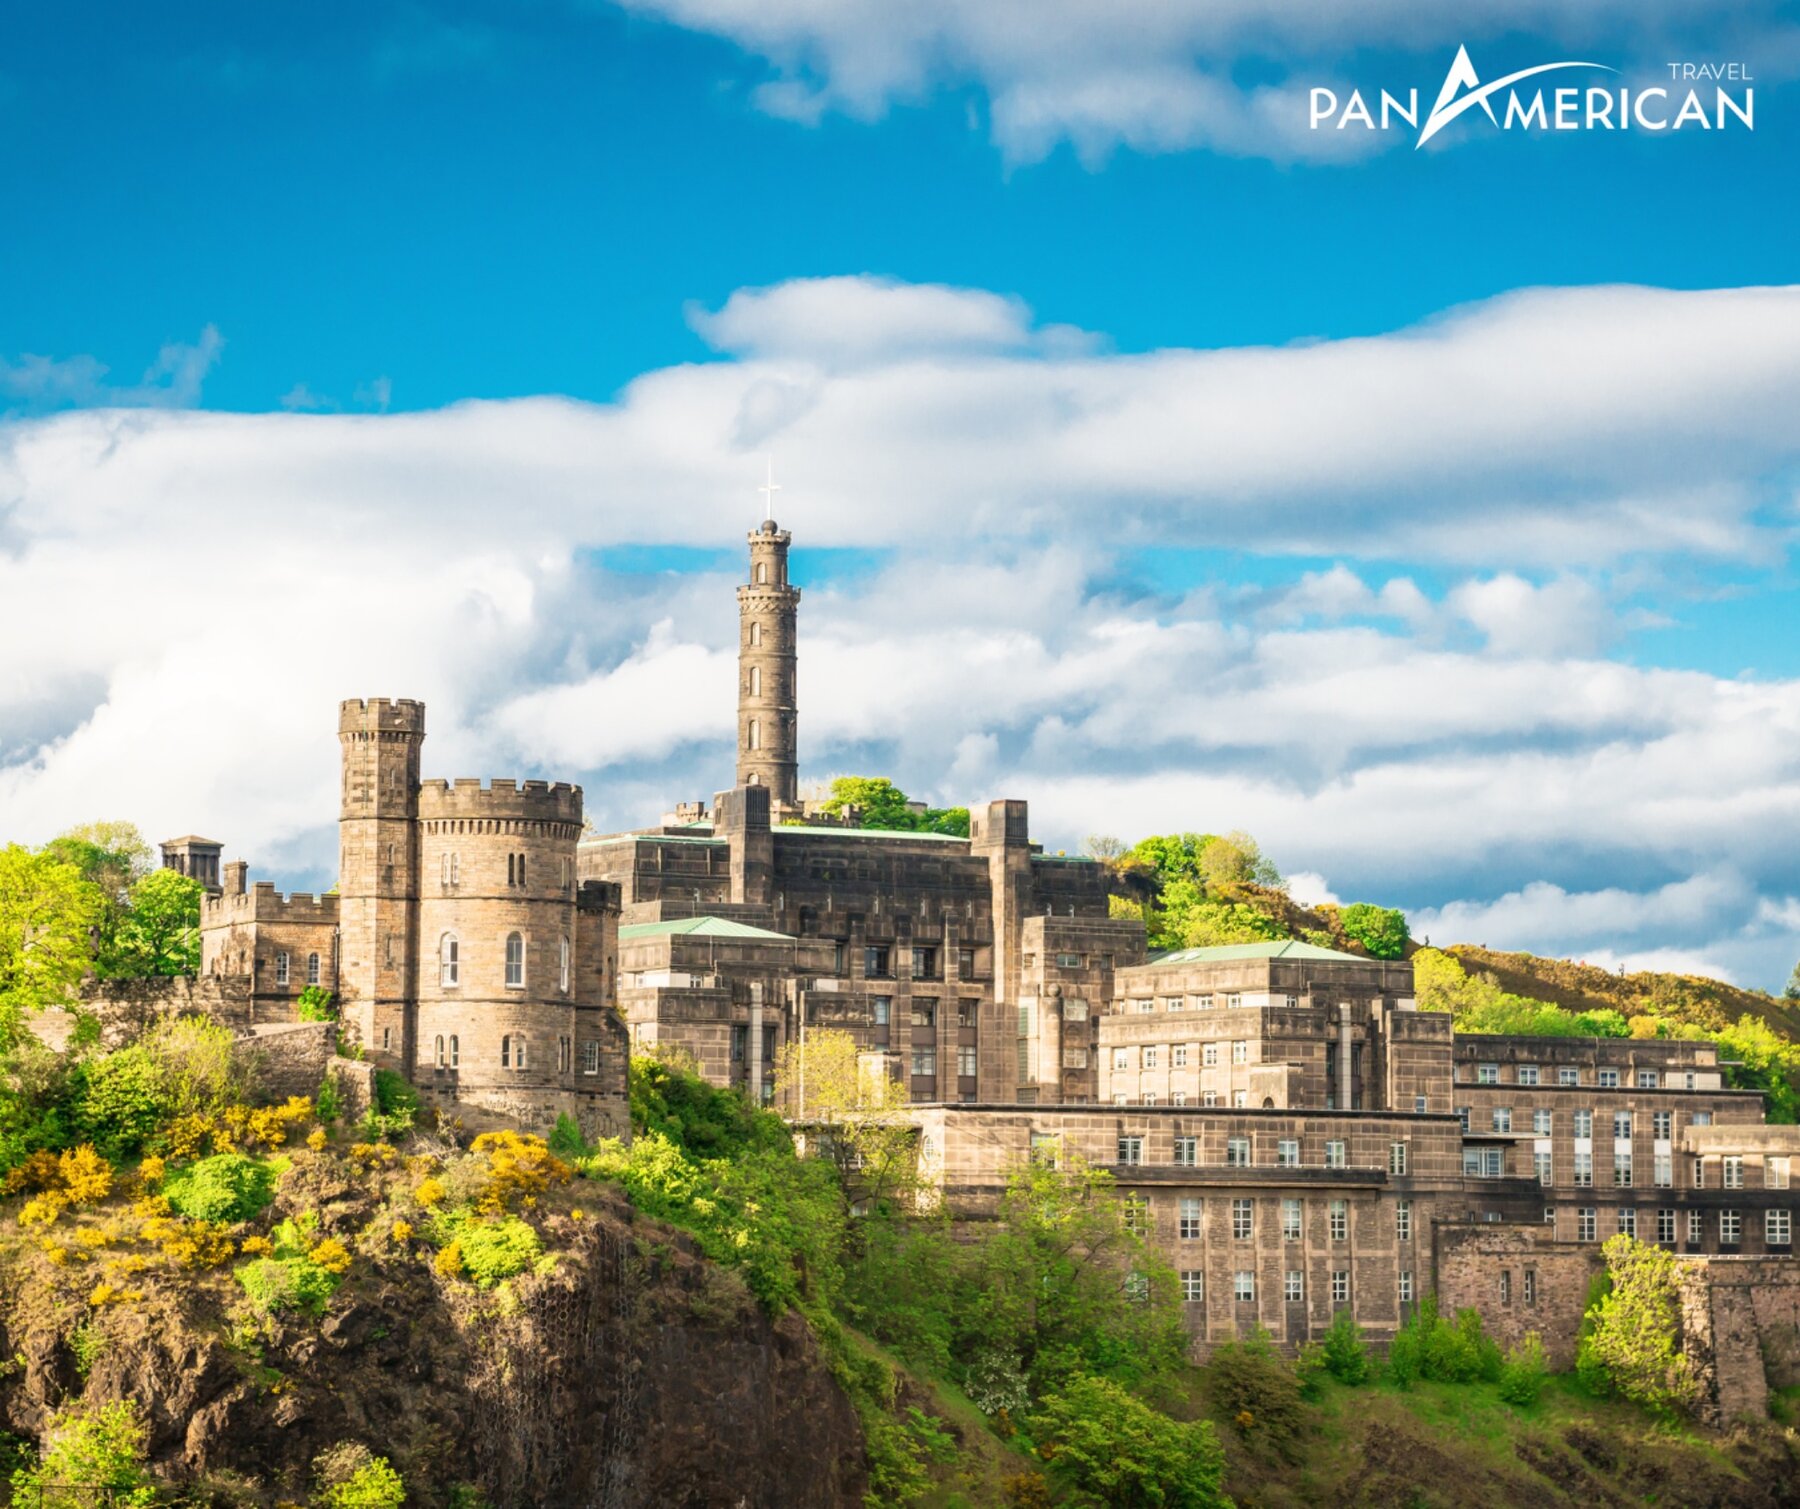 Lâu đài Edinburgh nổi tiếng với nhiều câu chuyện bí ẩn